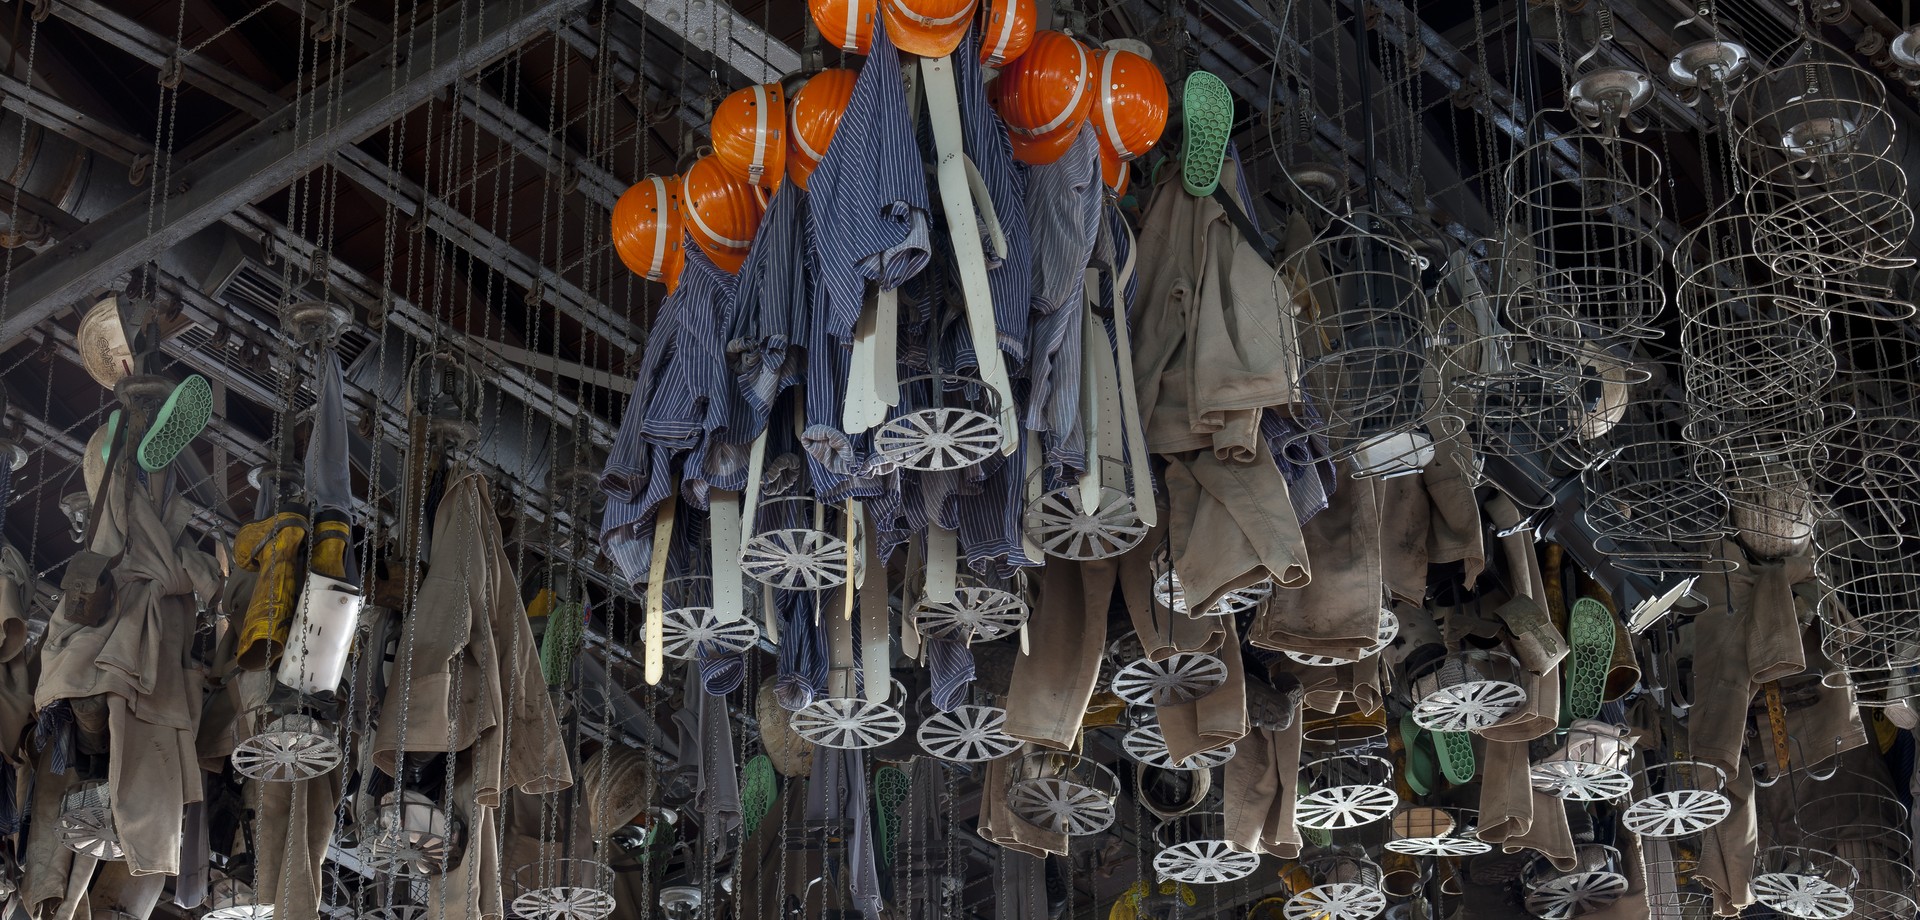 Blick unter die Decke der Waschkaue mit Kauenkörben, in denen Bergarbeiterkleidung liegt. Foto: Florian Monheim, Krefeld